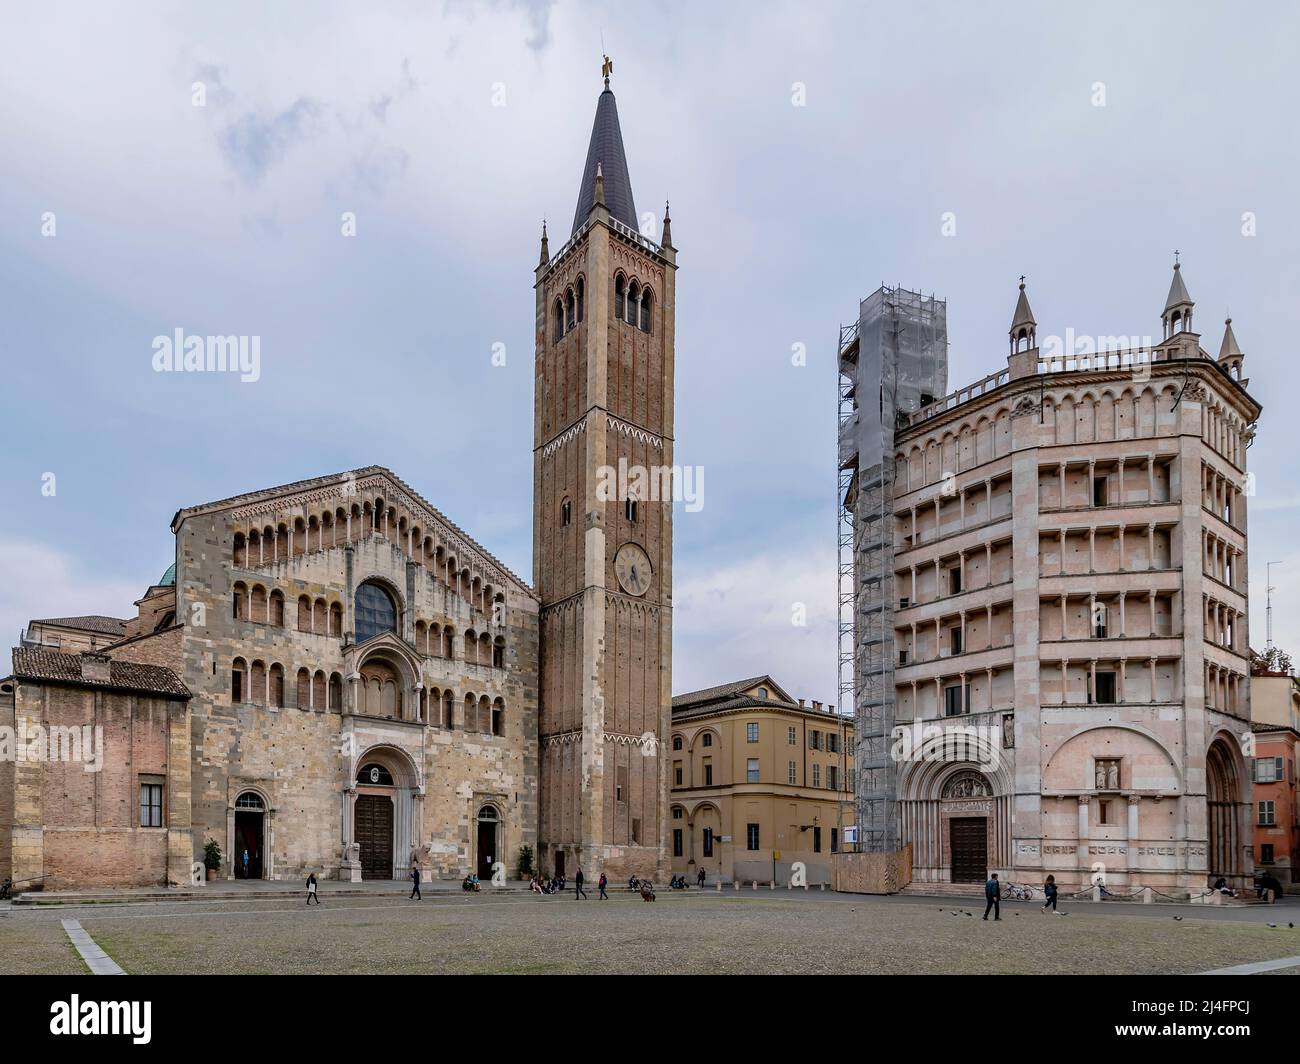 Der Domplatz in Parma, Italien, in einem ruhigen Moment am späten Nachmittag Stockfoto